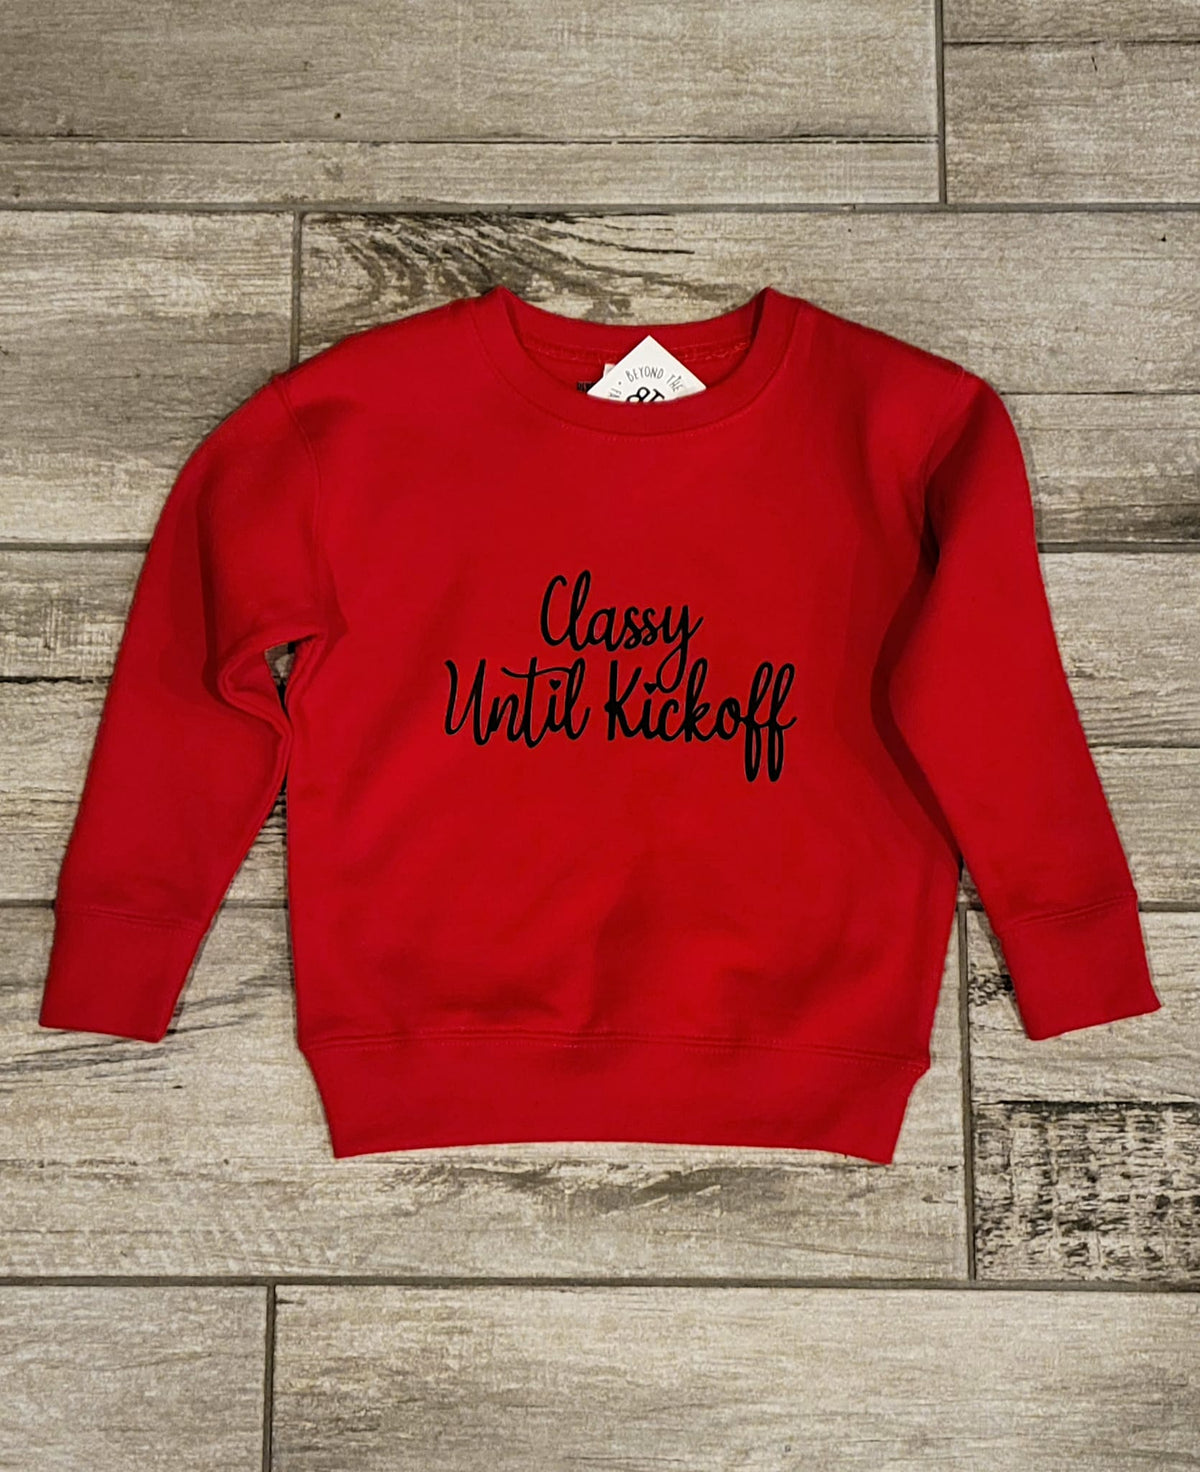 KIDS - Classy til Kickoff Sweatshirt, Red